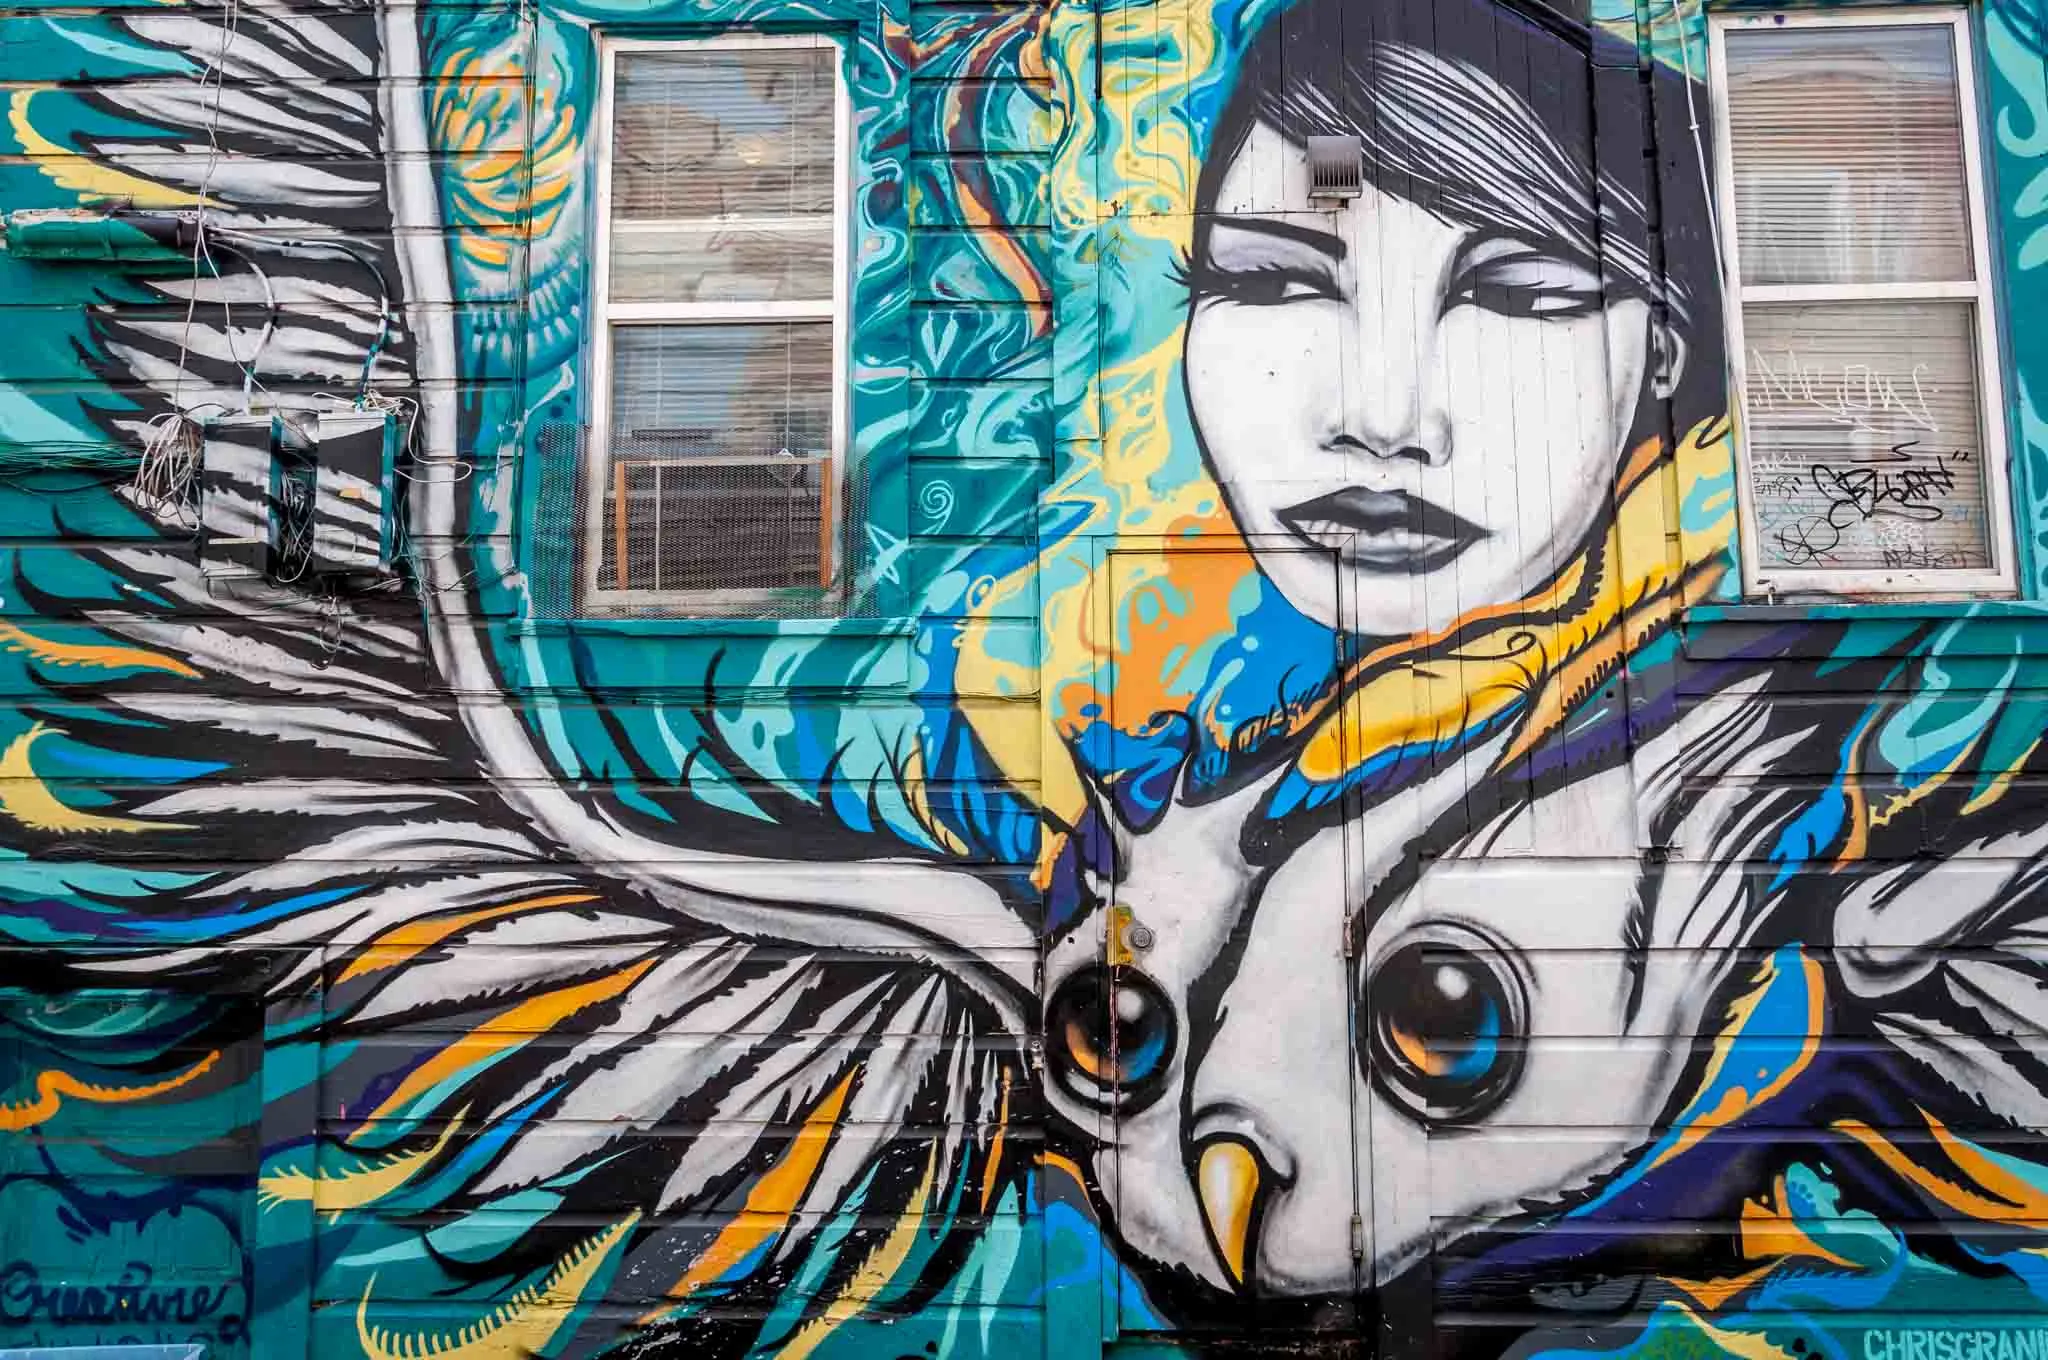 Street art mural of a woman and bird. 